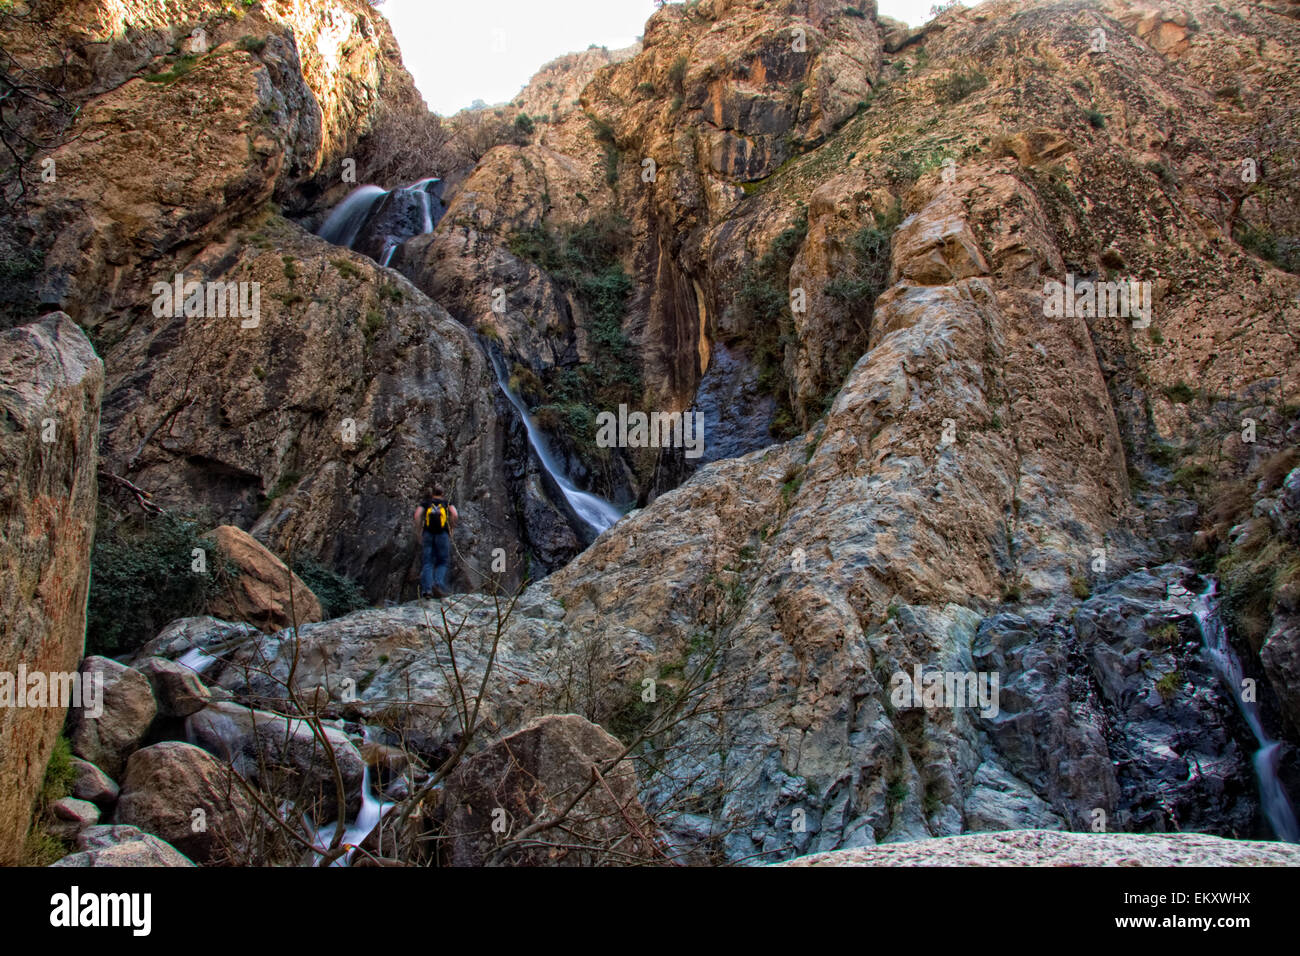 Homme non identifié est la célèbre cascade de Setti Fatma, Maroc Banque D'Images